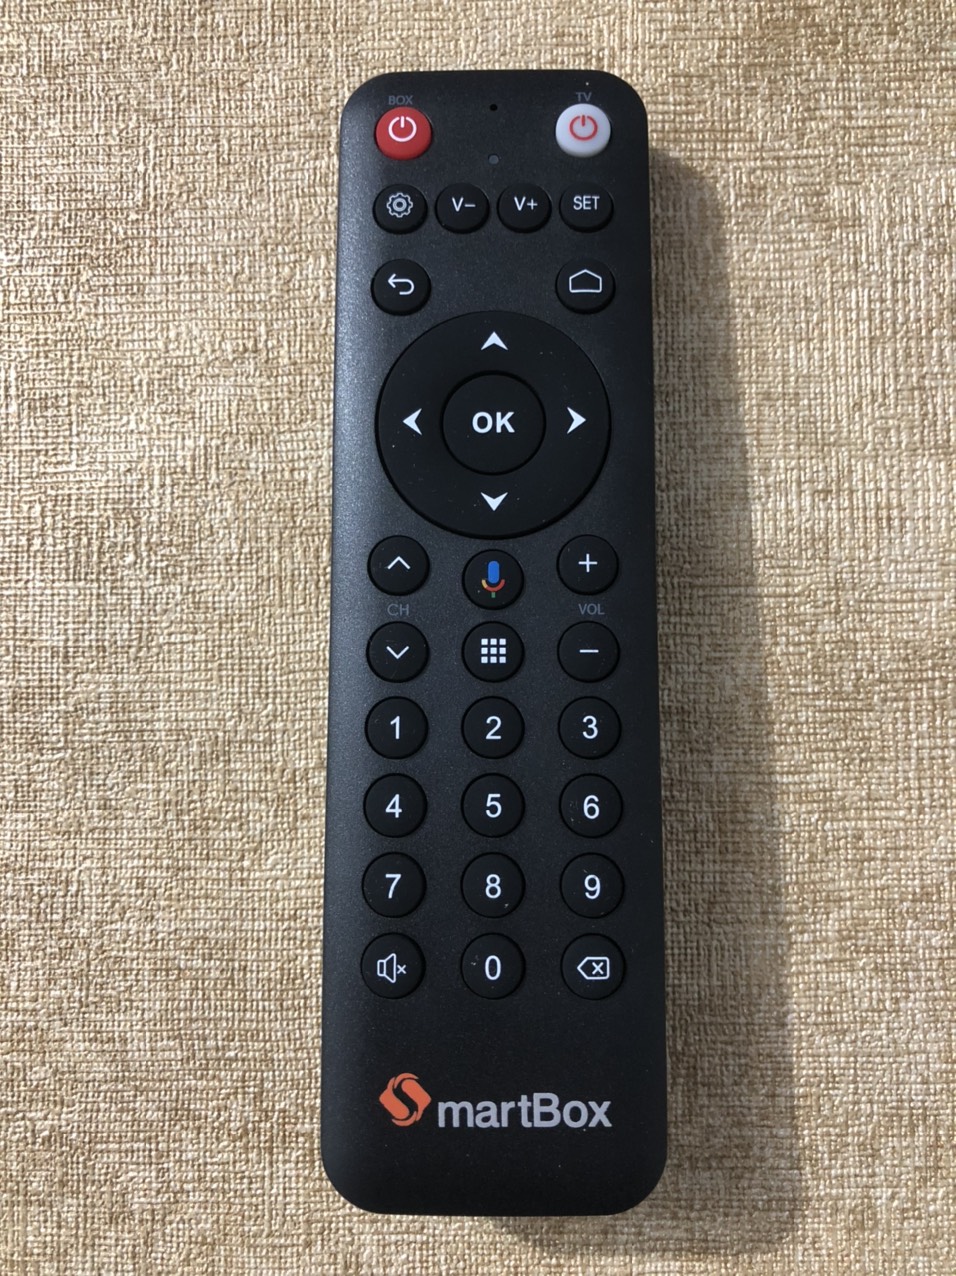 Điều khiển bằng giọng nói dùng cho Smartbox MyTV Chính hãng Cao cấp